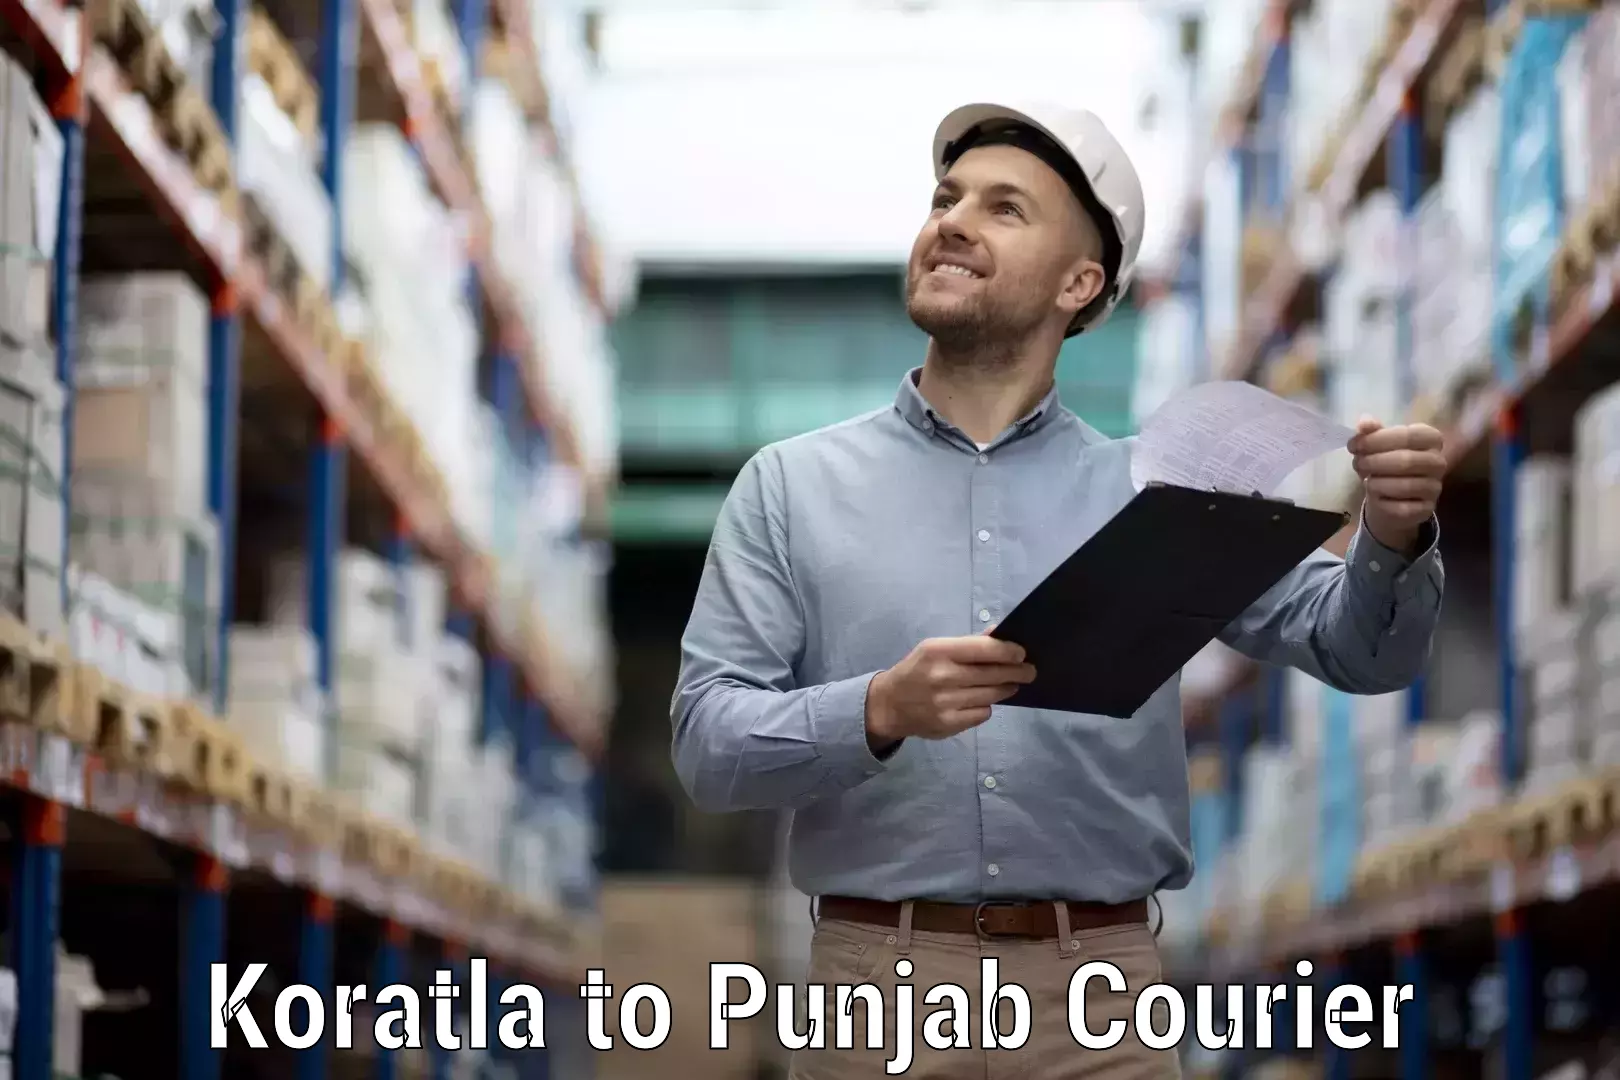 Multi-national courier services Koratla to Punjab